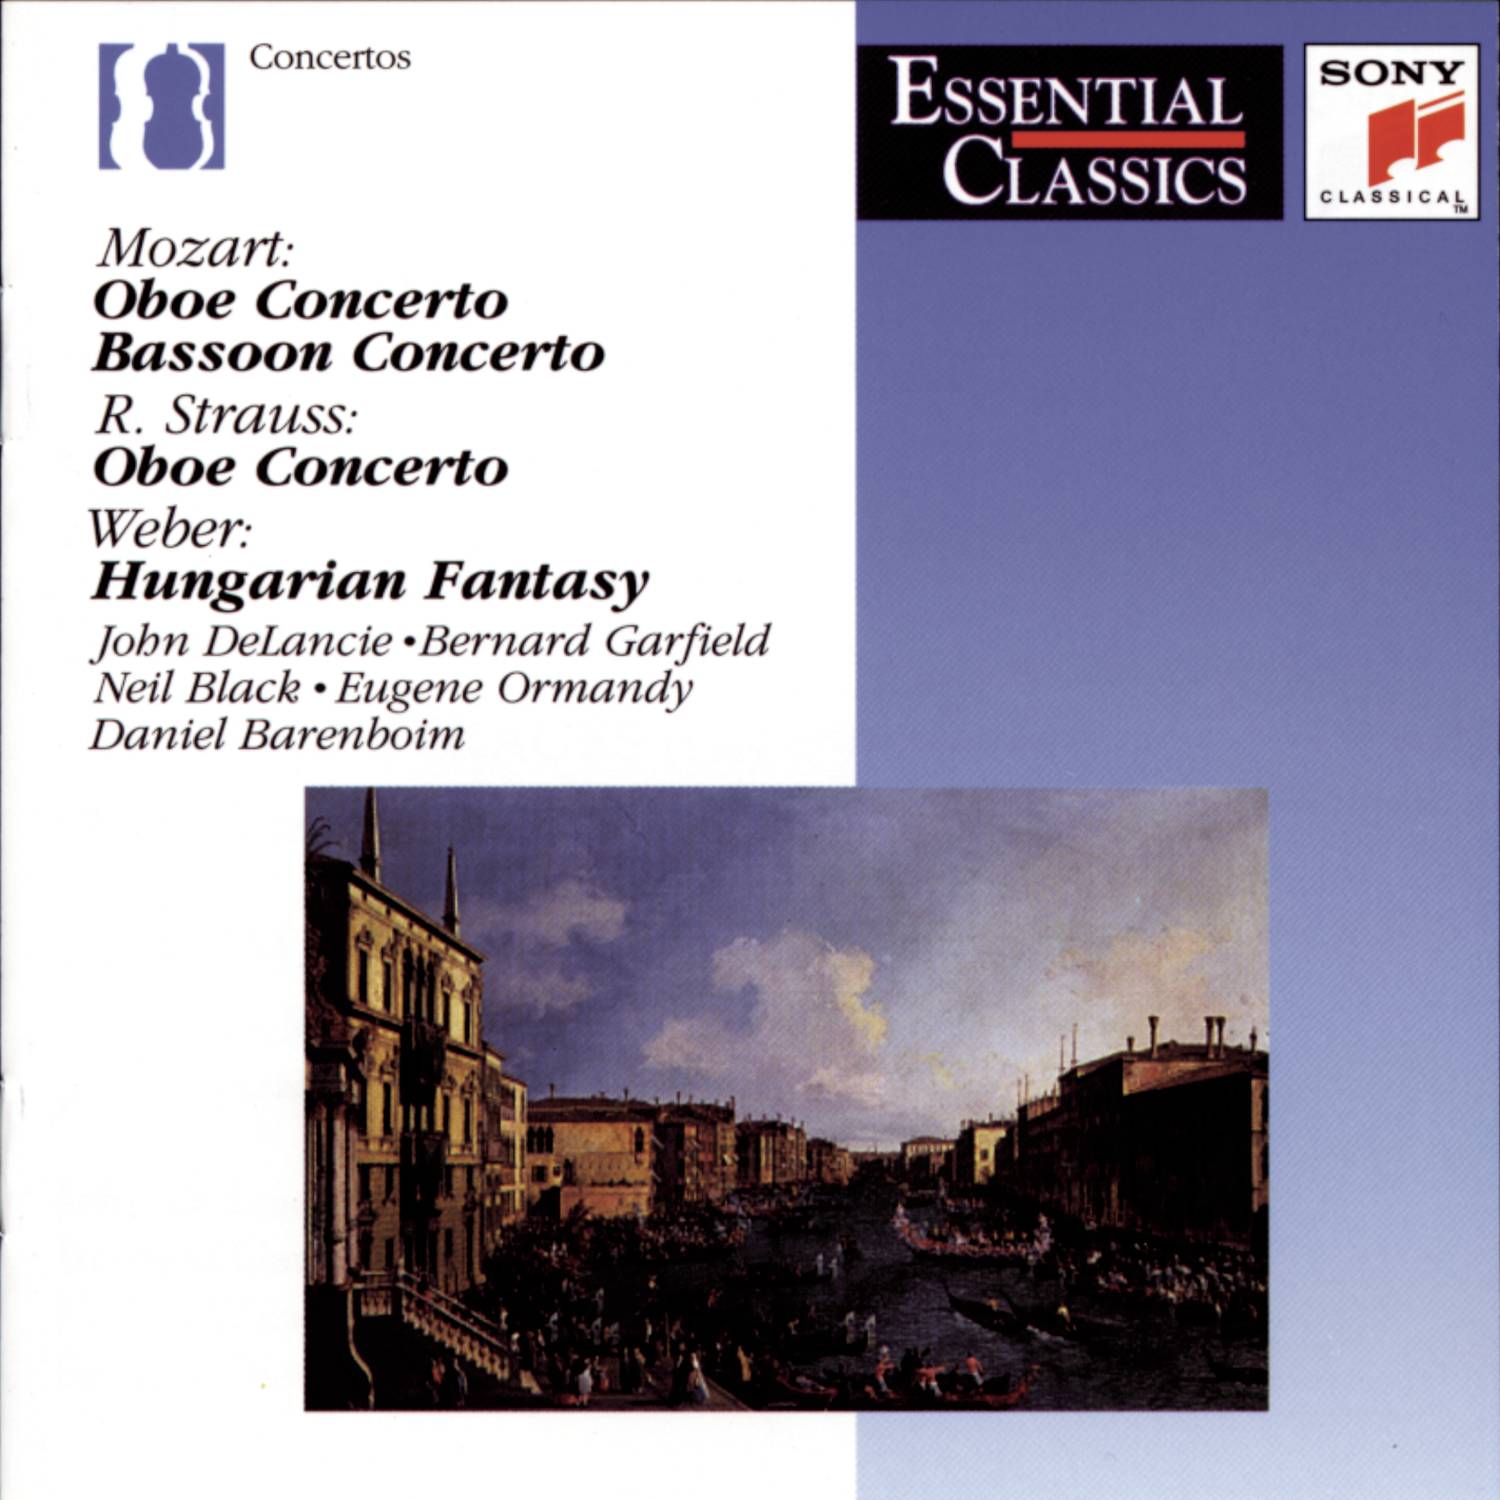 Concerto for Oboe and Small Orchestra: Allegro moderato - Vivace - Tempo primo